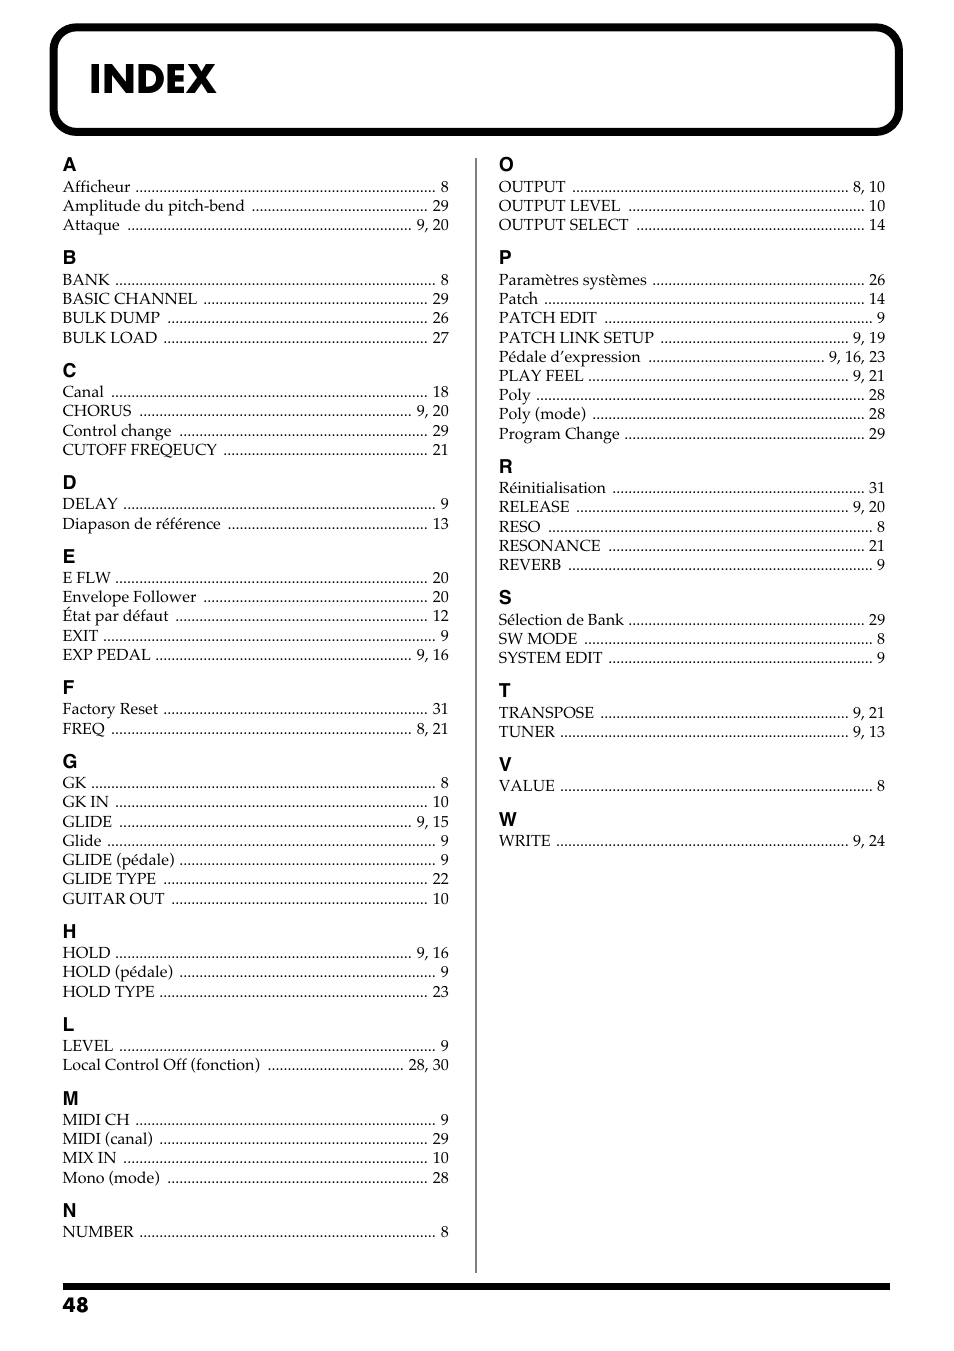 Index | Roland GR-20 Manuel d'utilisation | Page 48 / 70